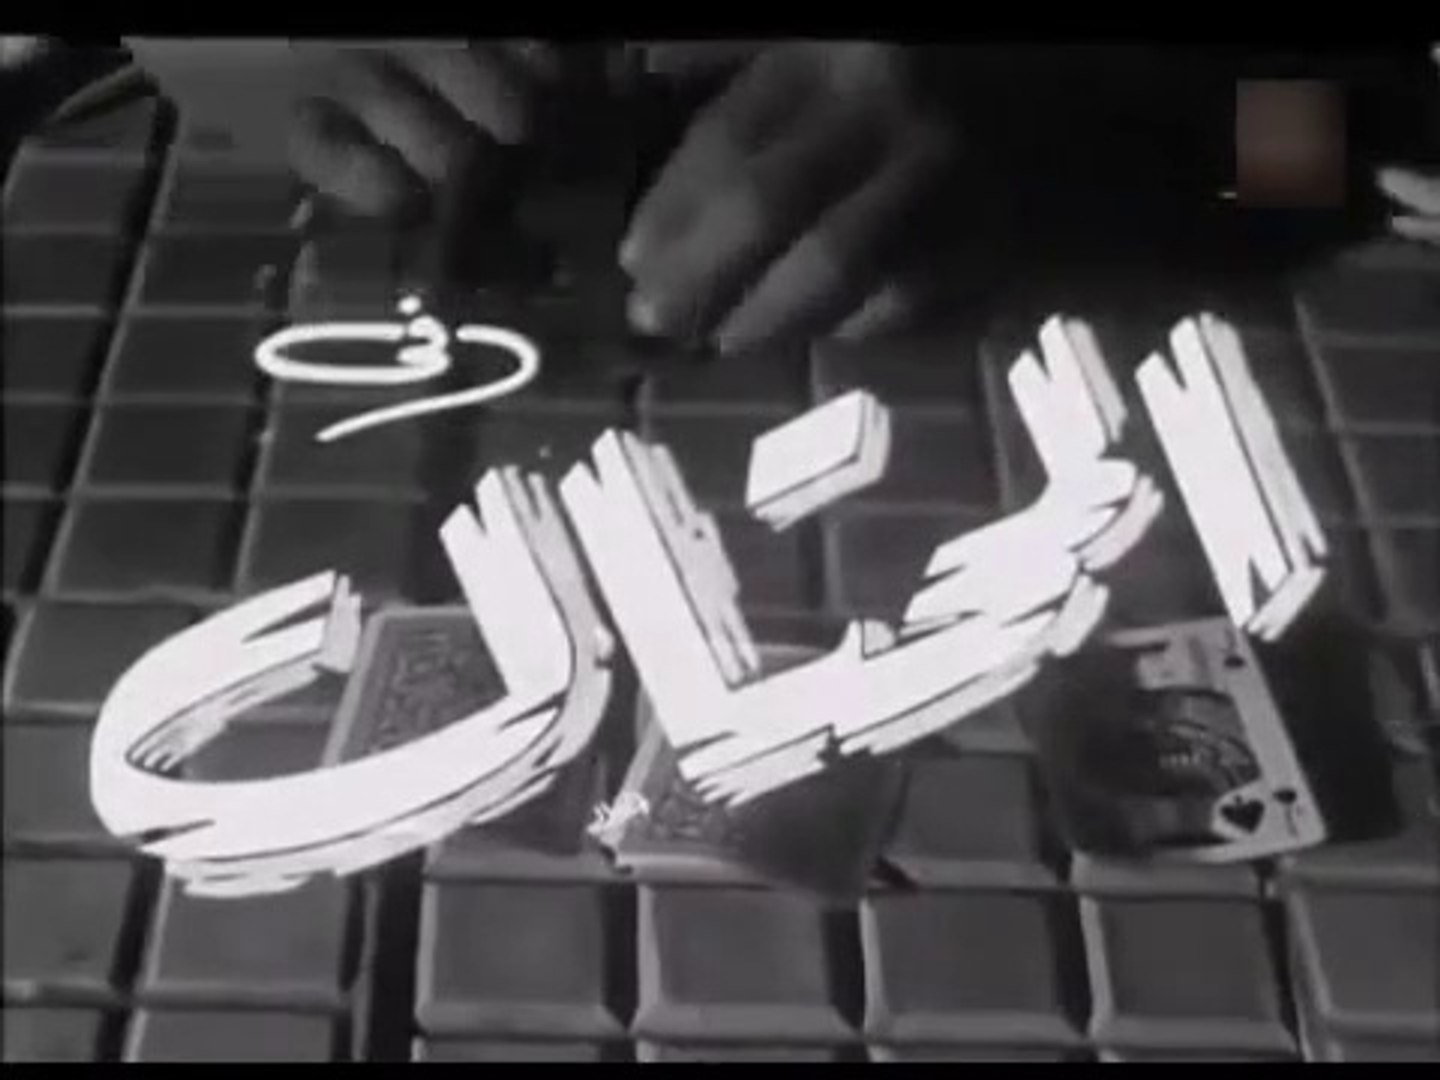 فيلم المحتال بطولة فريد شوقي و هدى سلطان 1954 - video Dailymotion